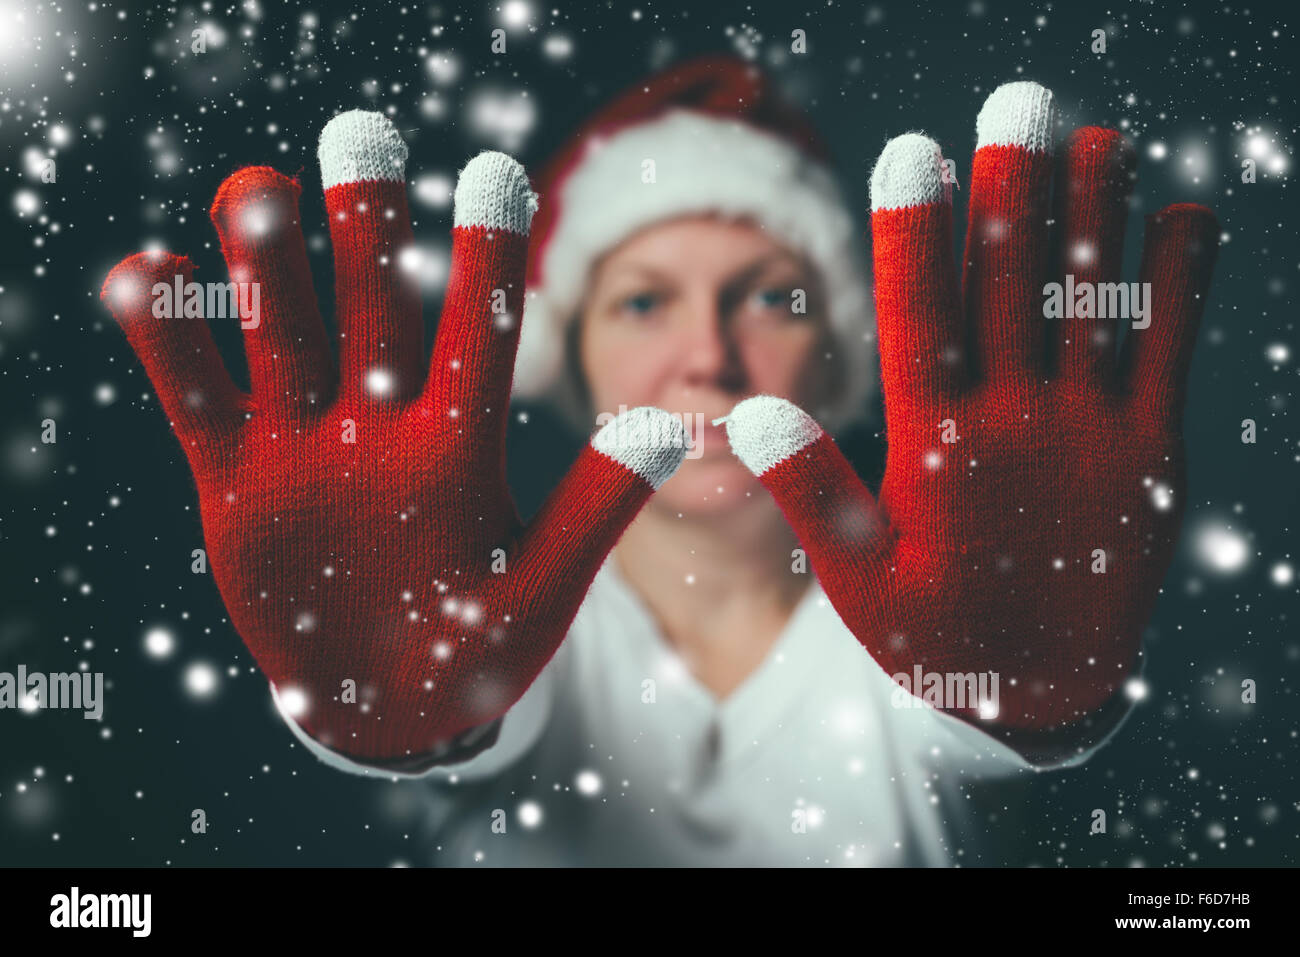 Stoppen der Feier, die schöne Frau im Weihnachtsmann-Kostüm machen Hand Stoppschild, Retro getönten Bild mit Tiefenschärfe Stockfoto